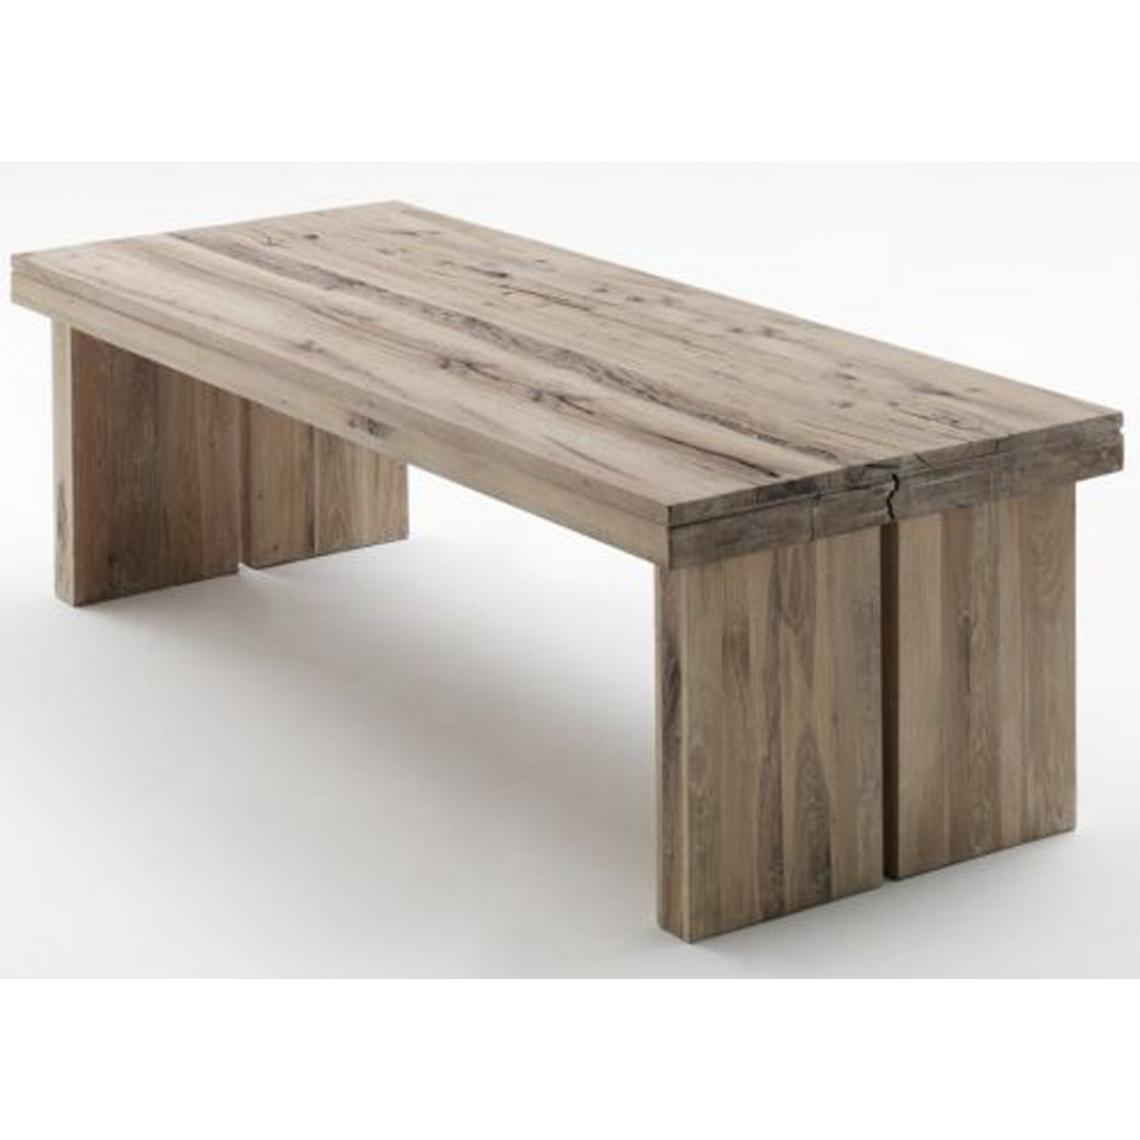 Pegane - Table à manger rectangulaire en chêne chaulé laqué - L.180 x H.76 x P.90 cm - Tables à manger